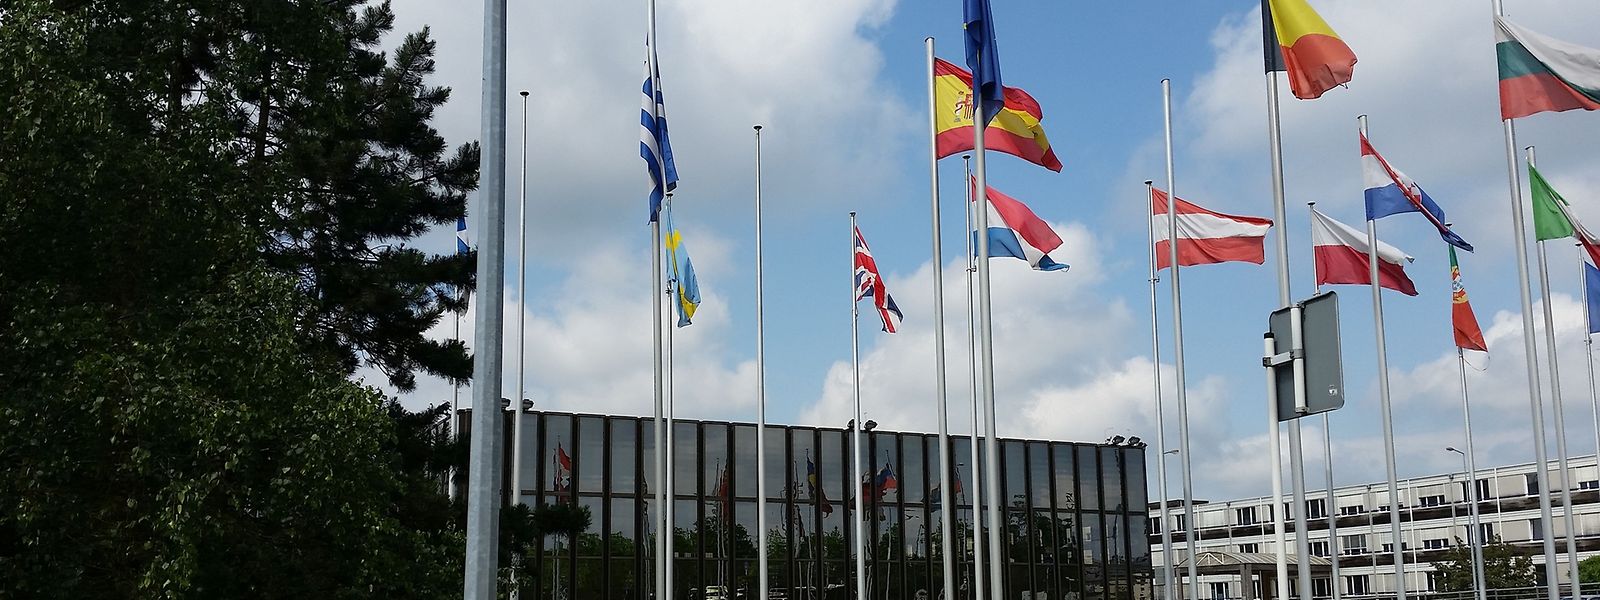 Au lendemain du référendum ayant conduit au Brexit, le drapeau britannique flotte toujours sur le parvis des diverses institutions européennes établies à Luxembourg-Kirchberg.